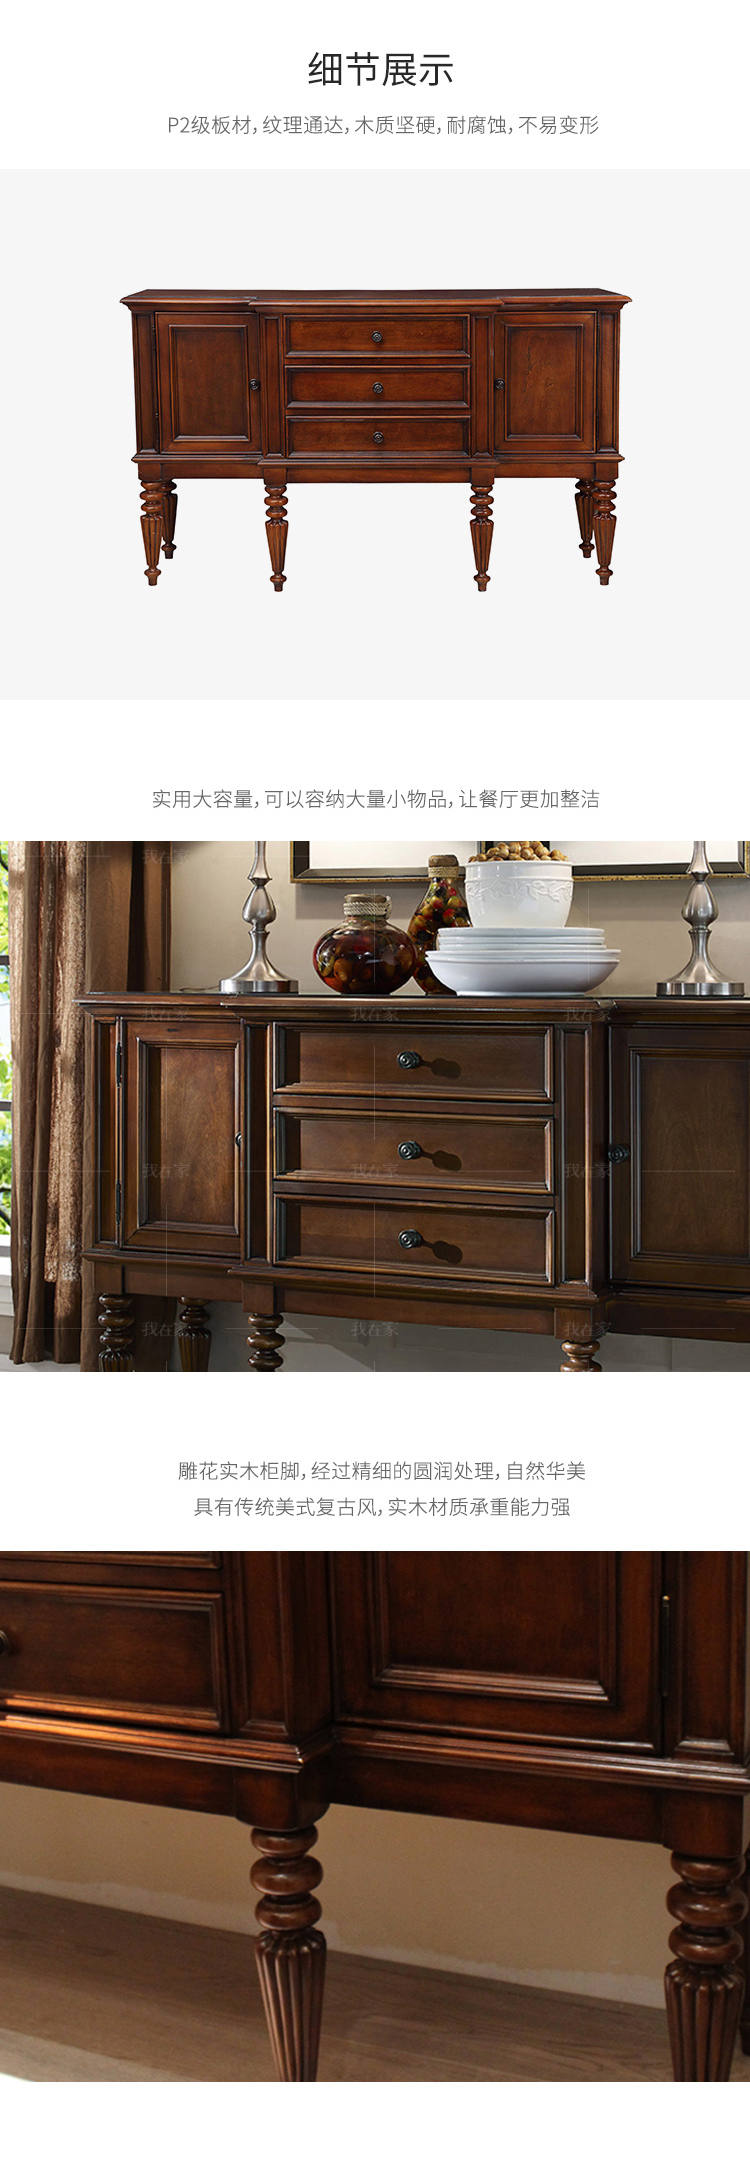 传统美式风格传世餐边柜的家具详细介绍